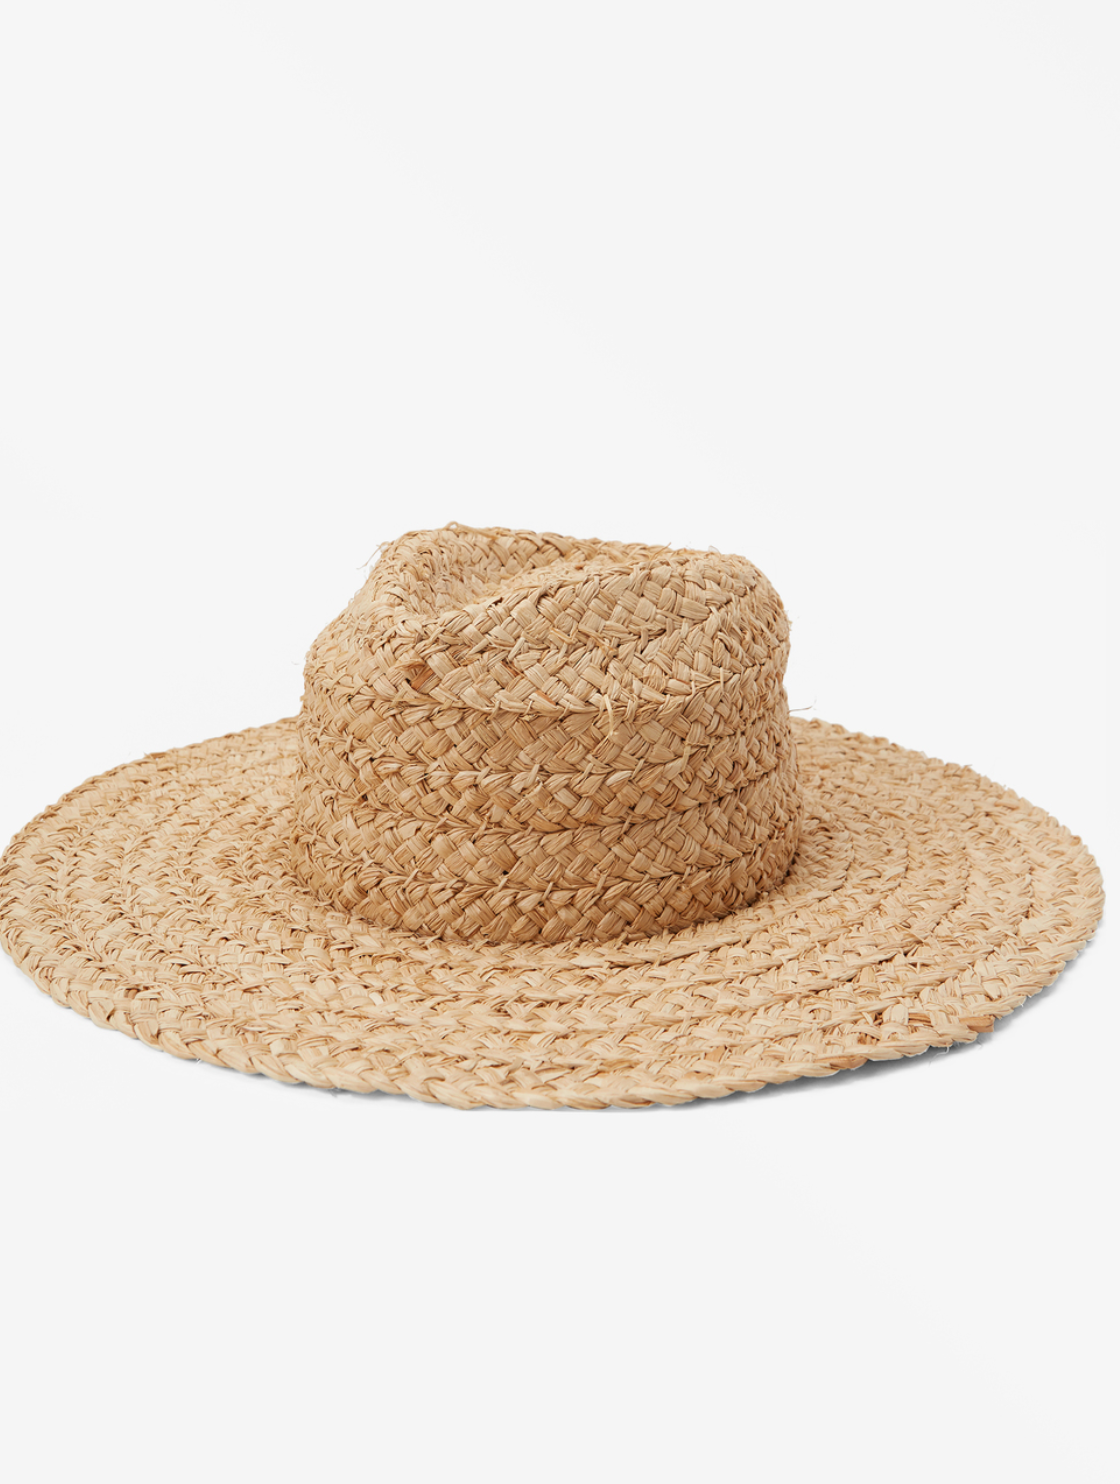 Billabong Seamist Straw Hat